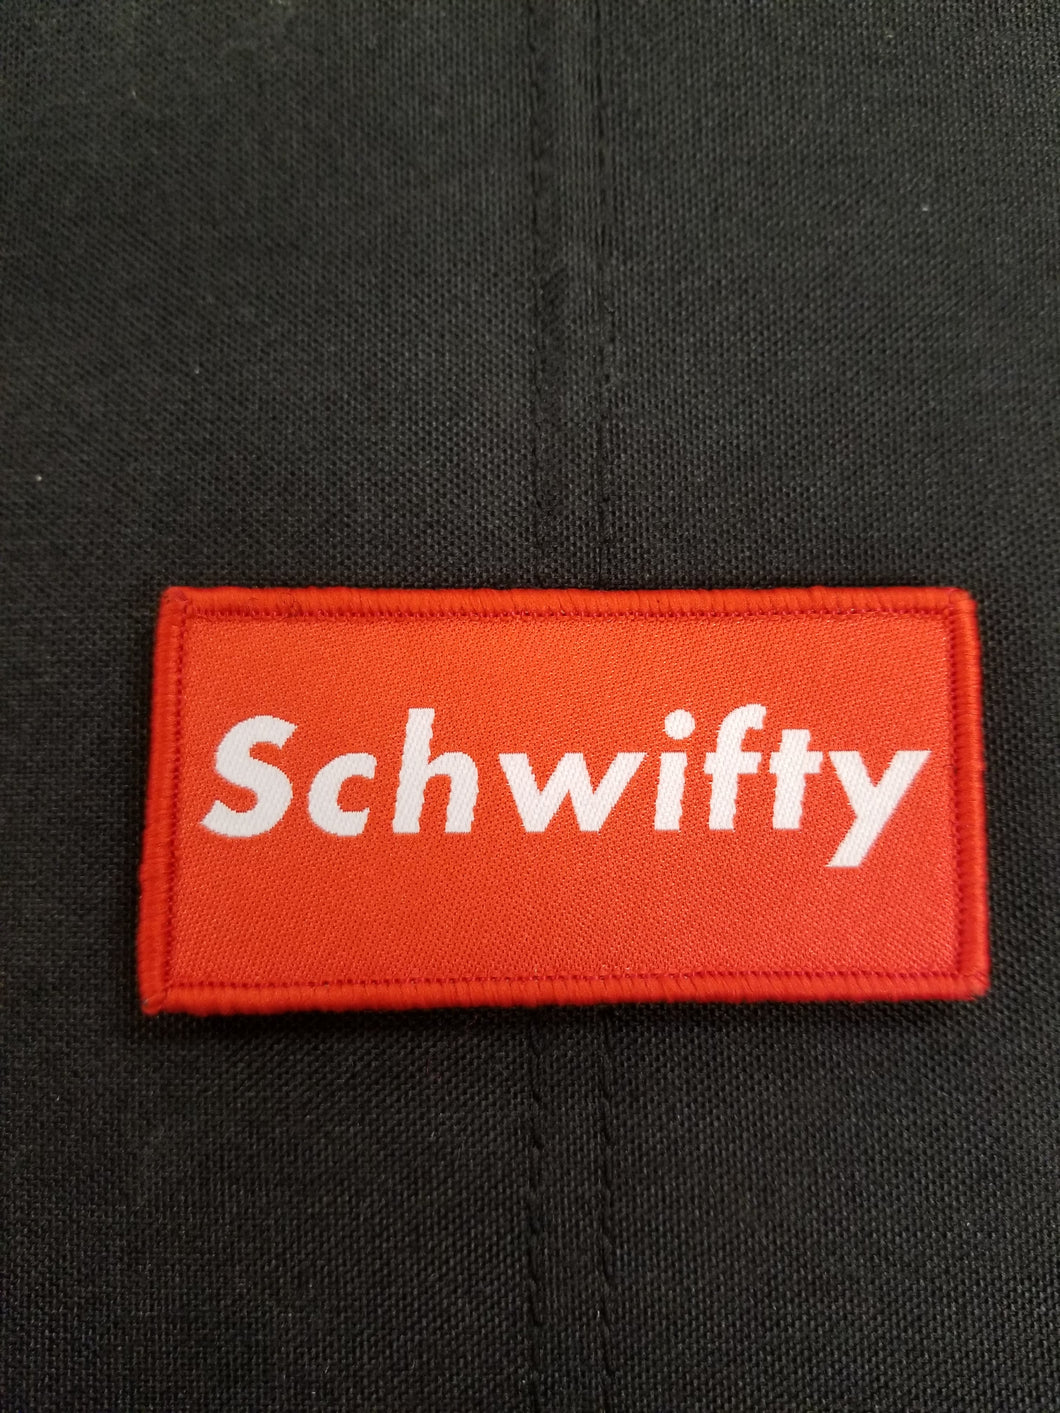 Schwifty Patch